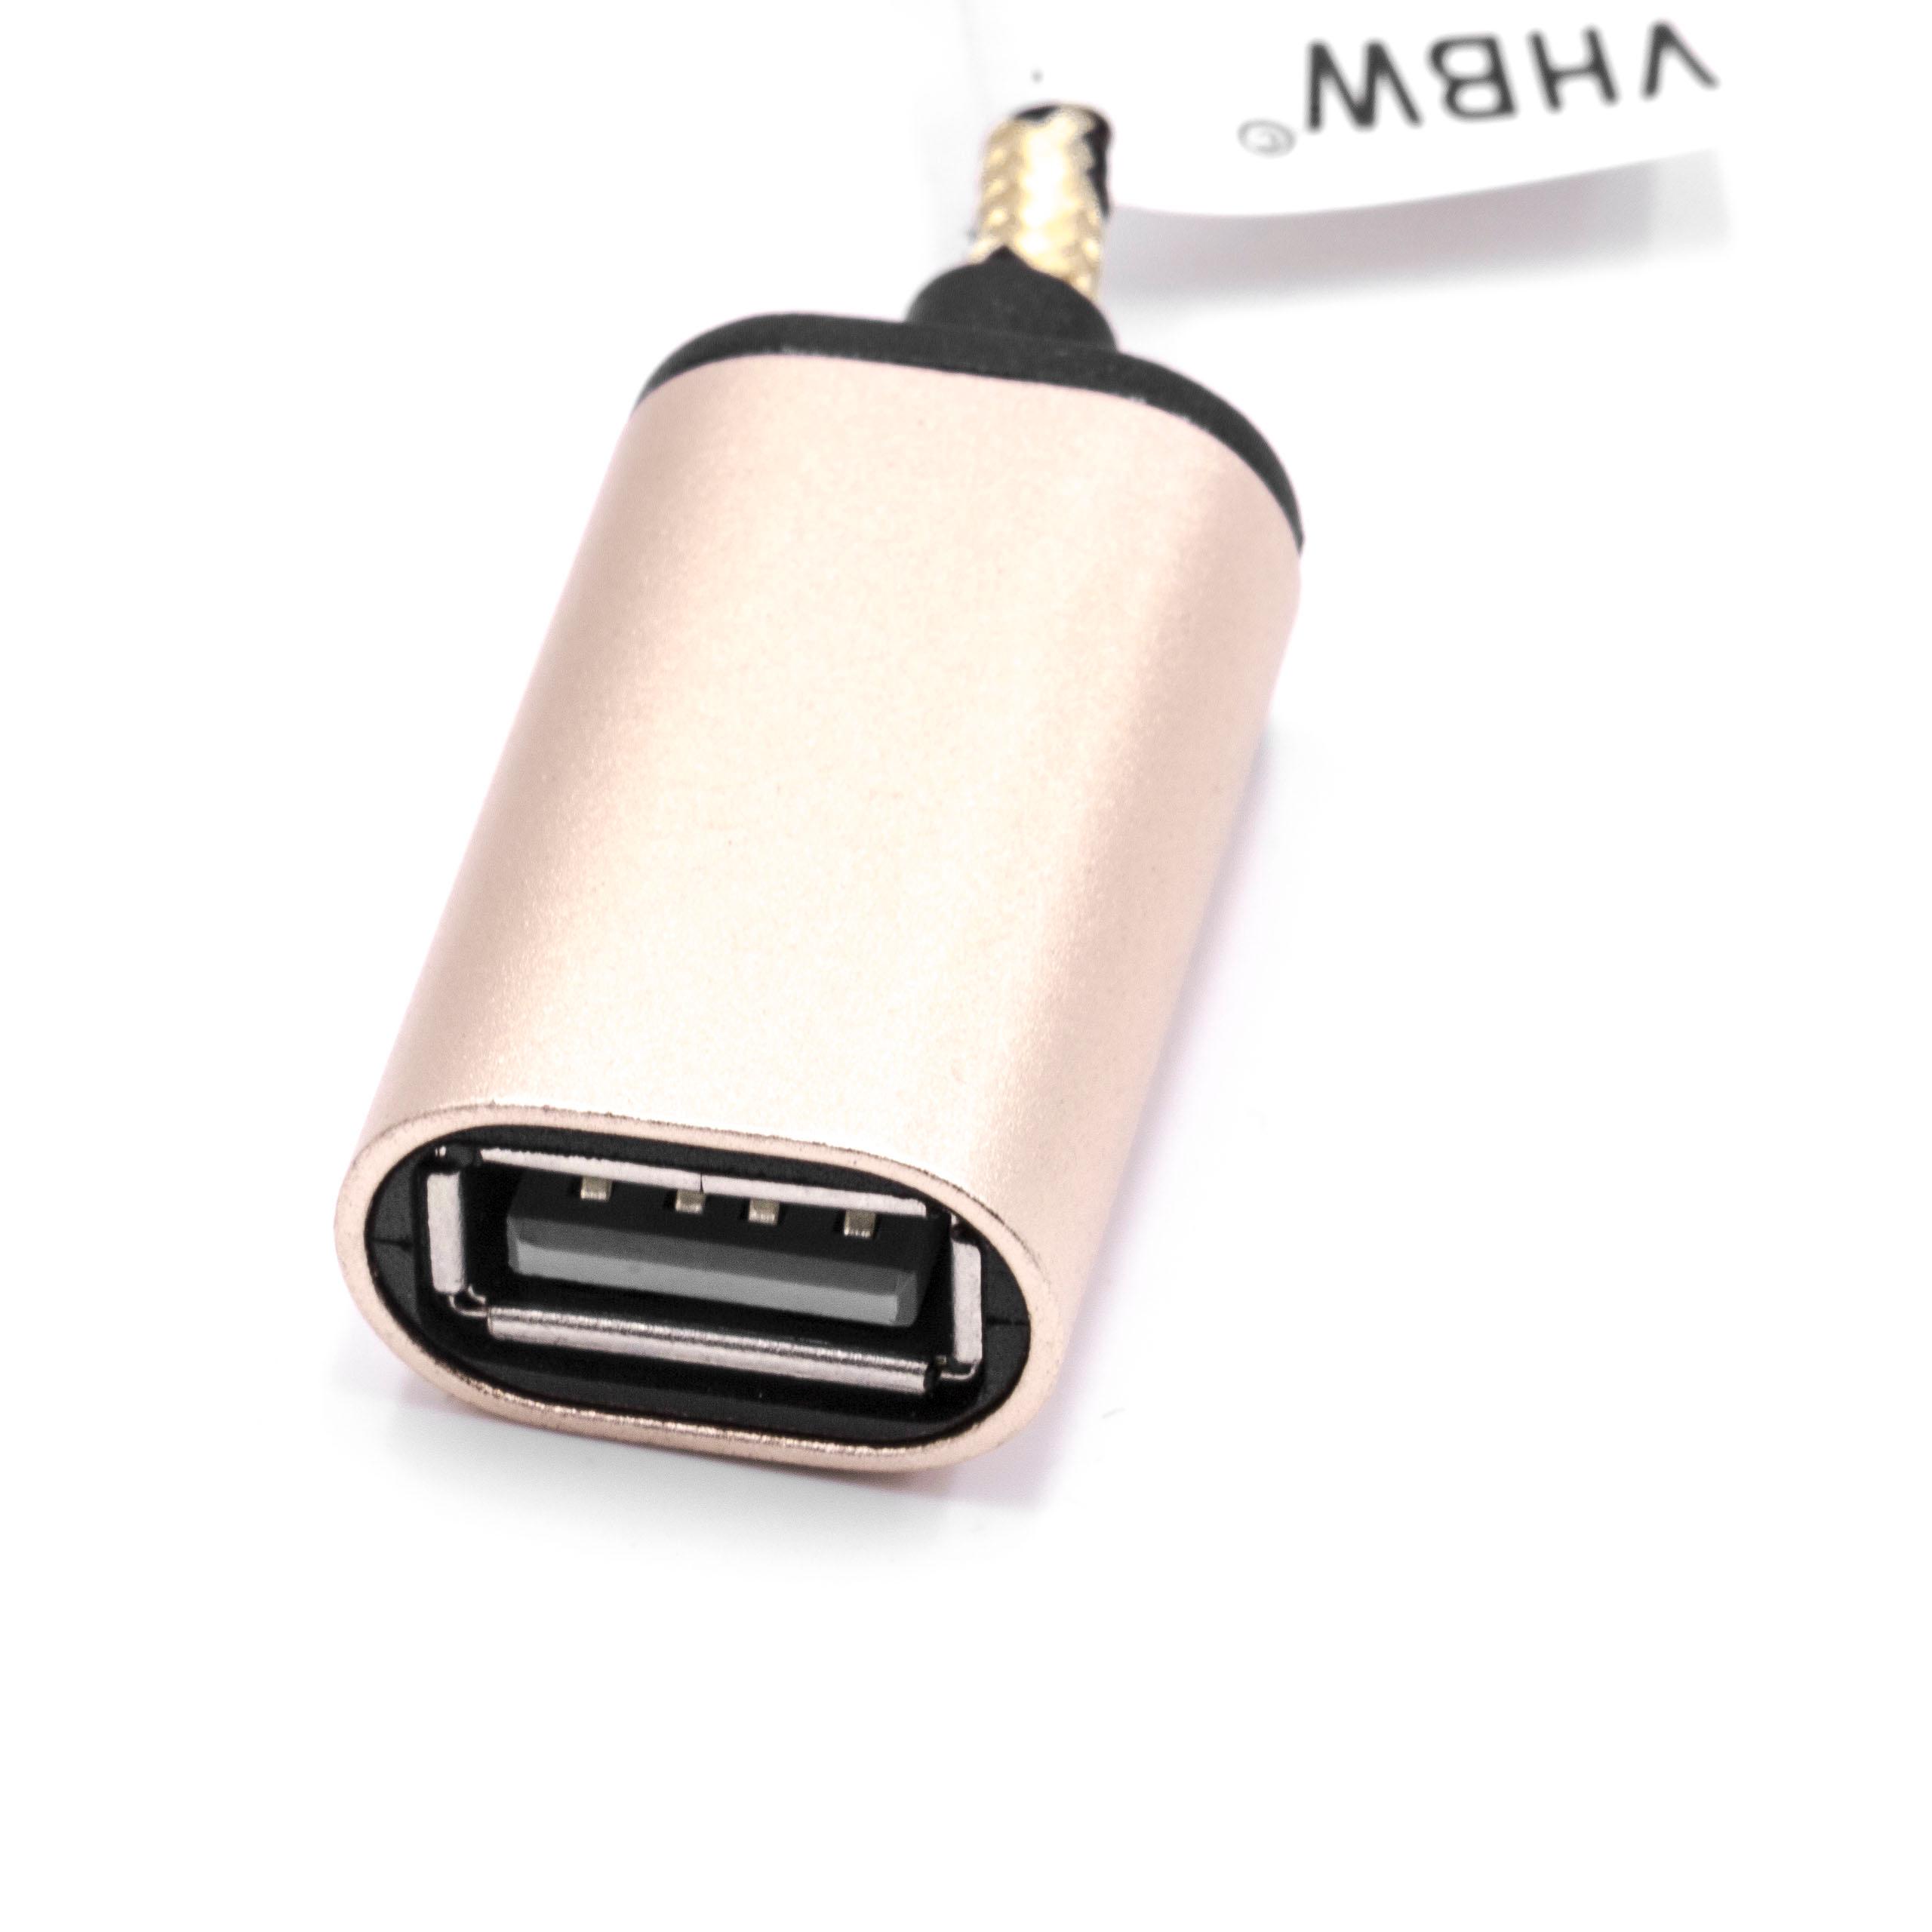 Adaptador OTG enchufe USB 3.1 tipo C a conector USB 2.0-A para smartphones, tablets, computadora 